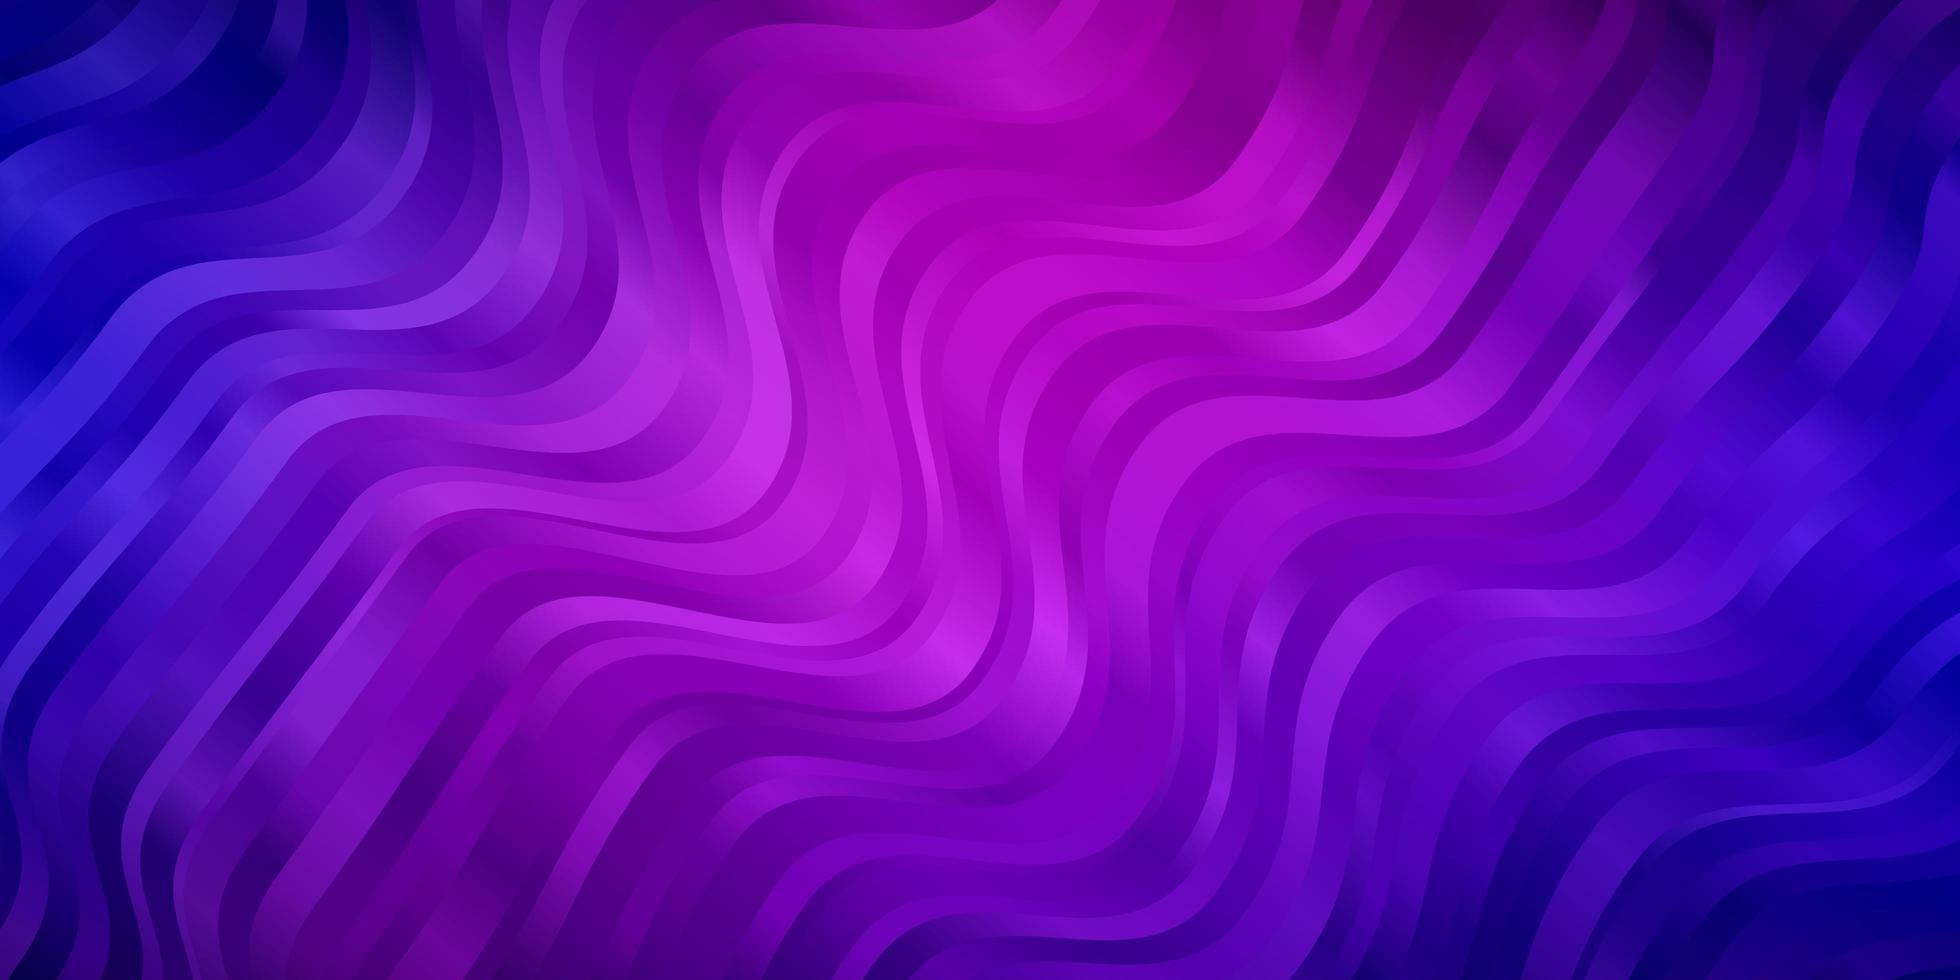 ljus lila rosa vektor bakgrund med linjer illustration i halvton stil med lutning kurvor mönster för webbplatser målsidor